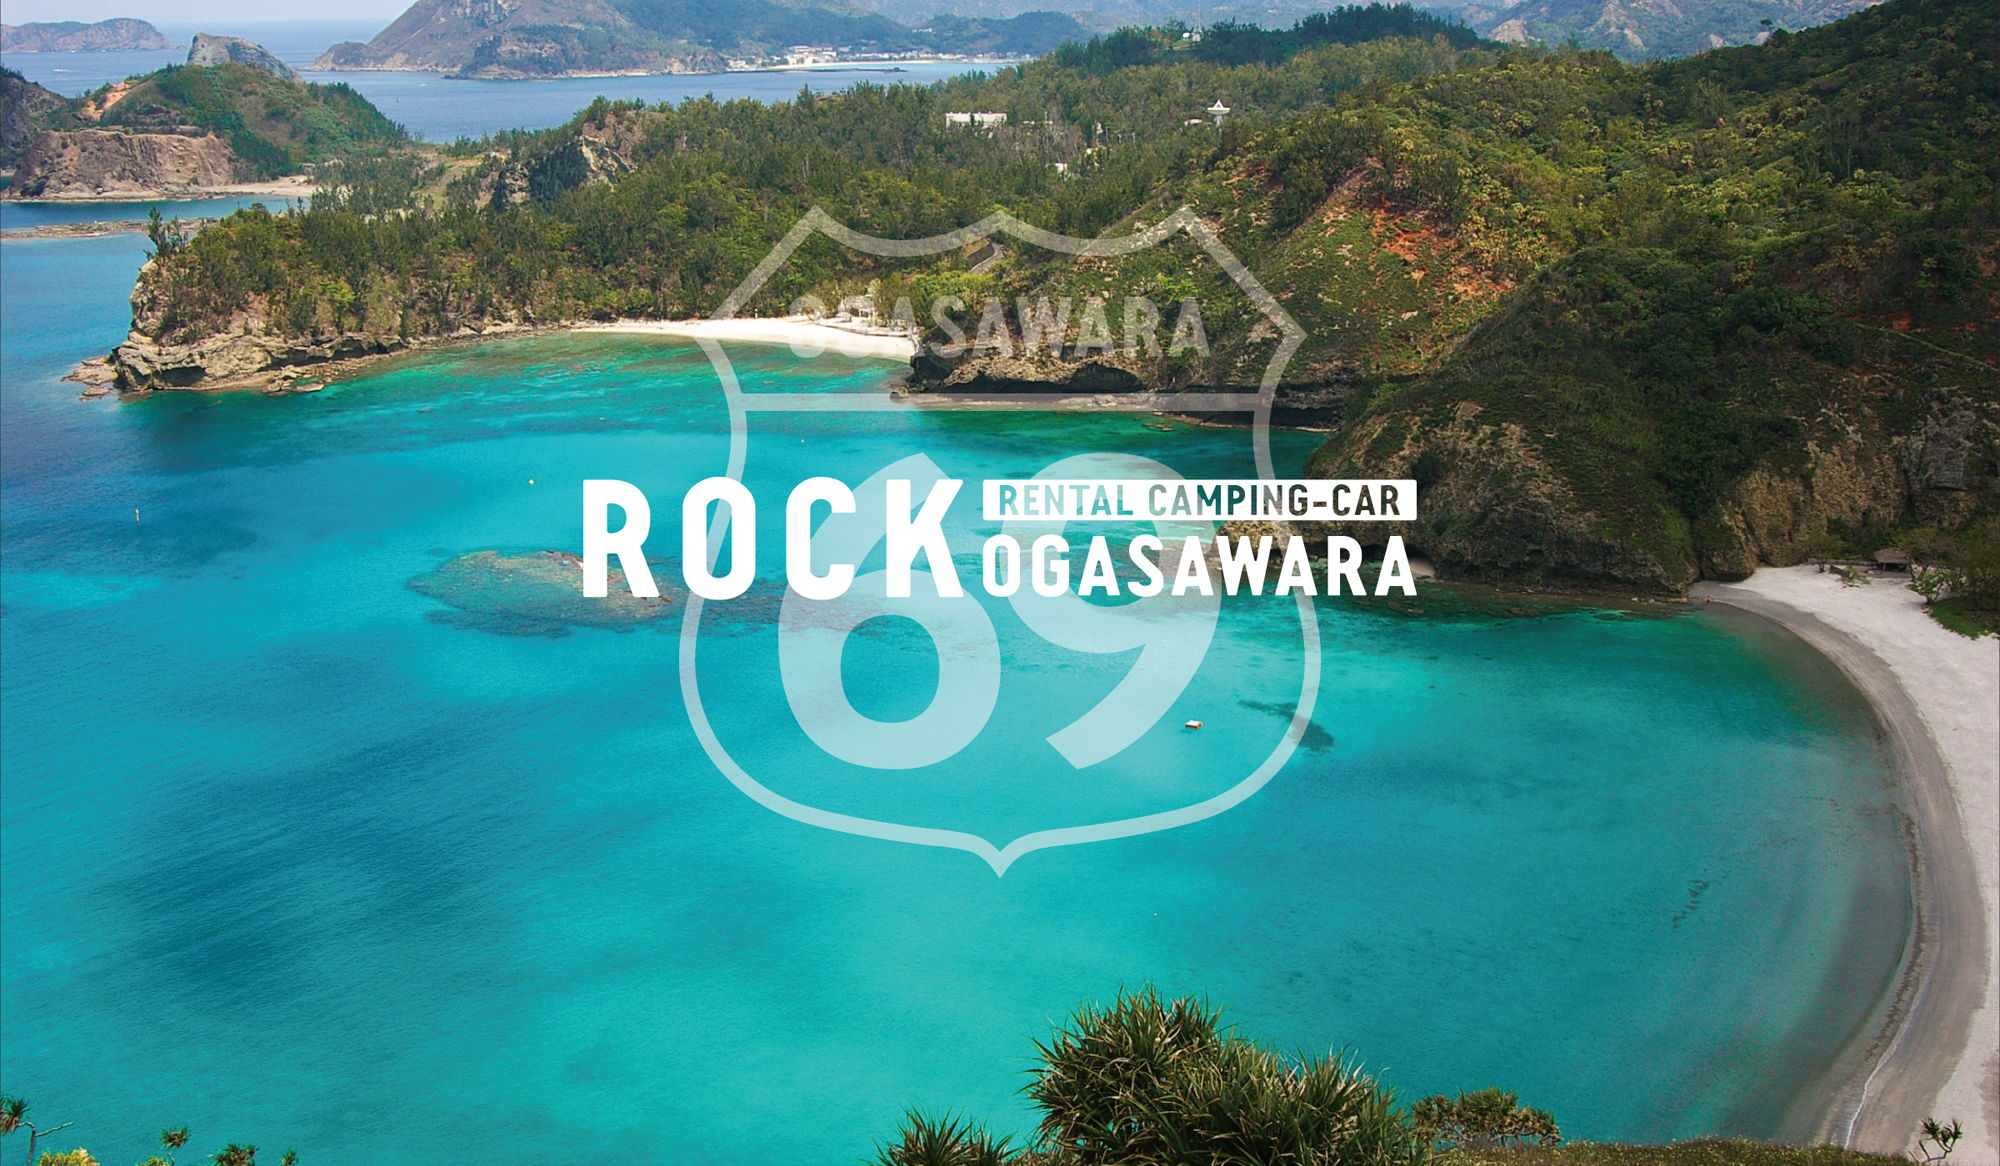 ROCK RENTAL CAMPING-CAR OGASAWARA